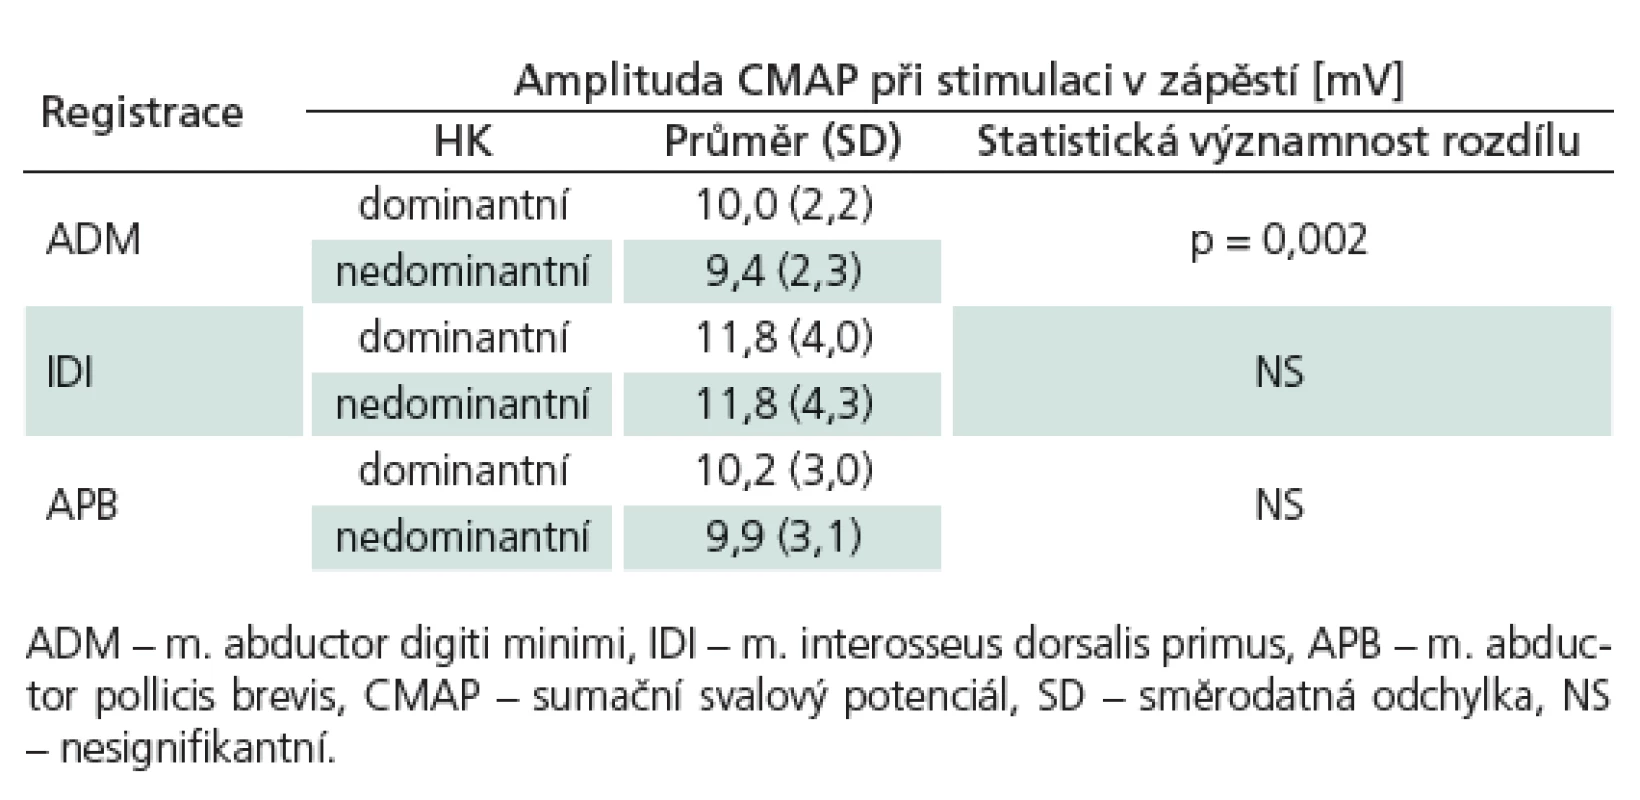 Porovnání amplitud CMAP dominantních (n = 188) a nedominantních (n = 190) končetin při stimulaci v zápěstí.